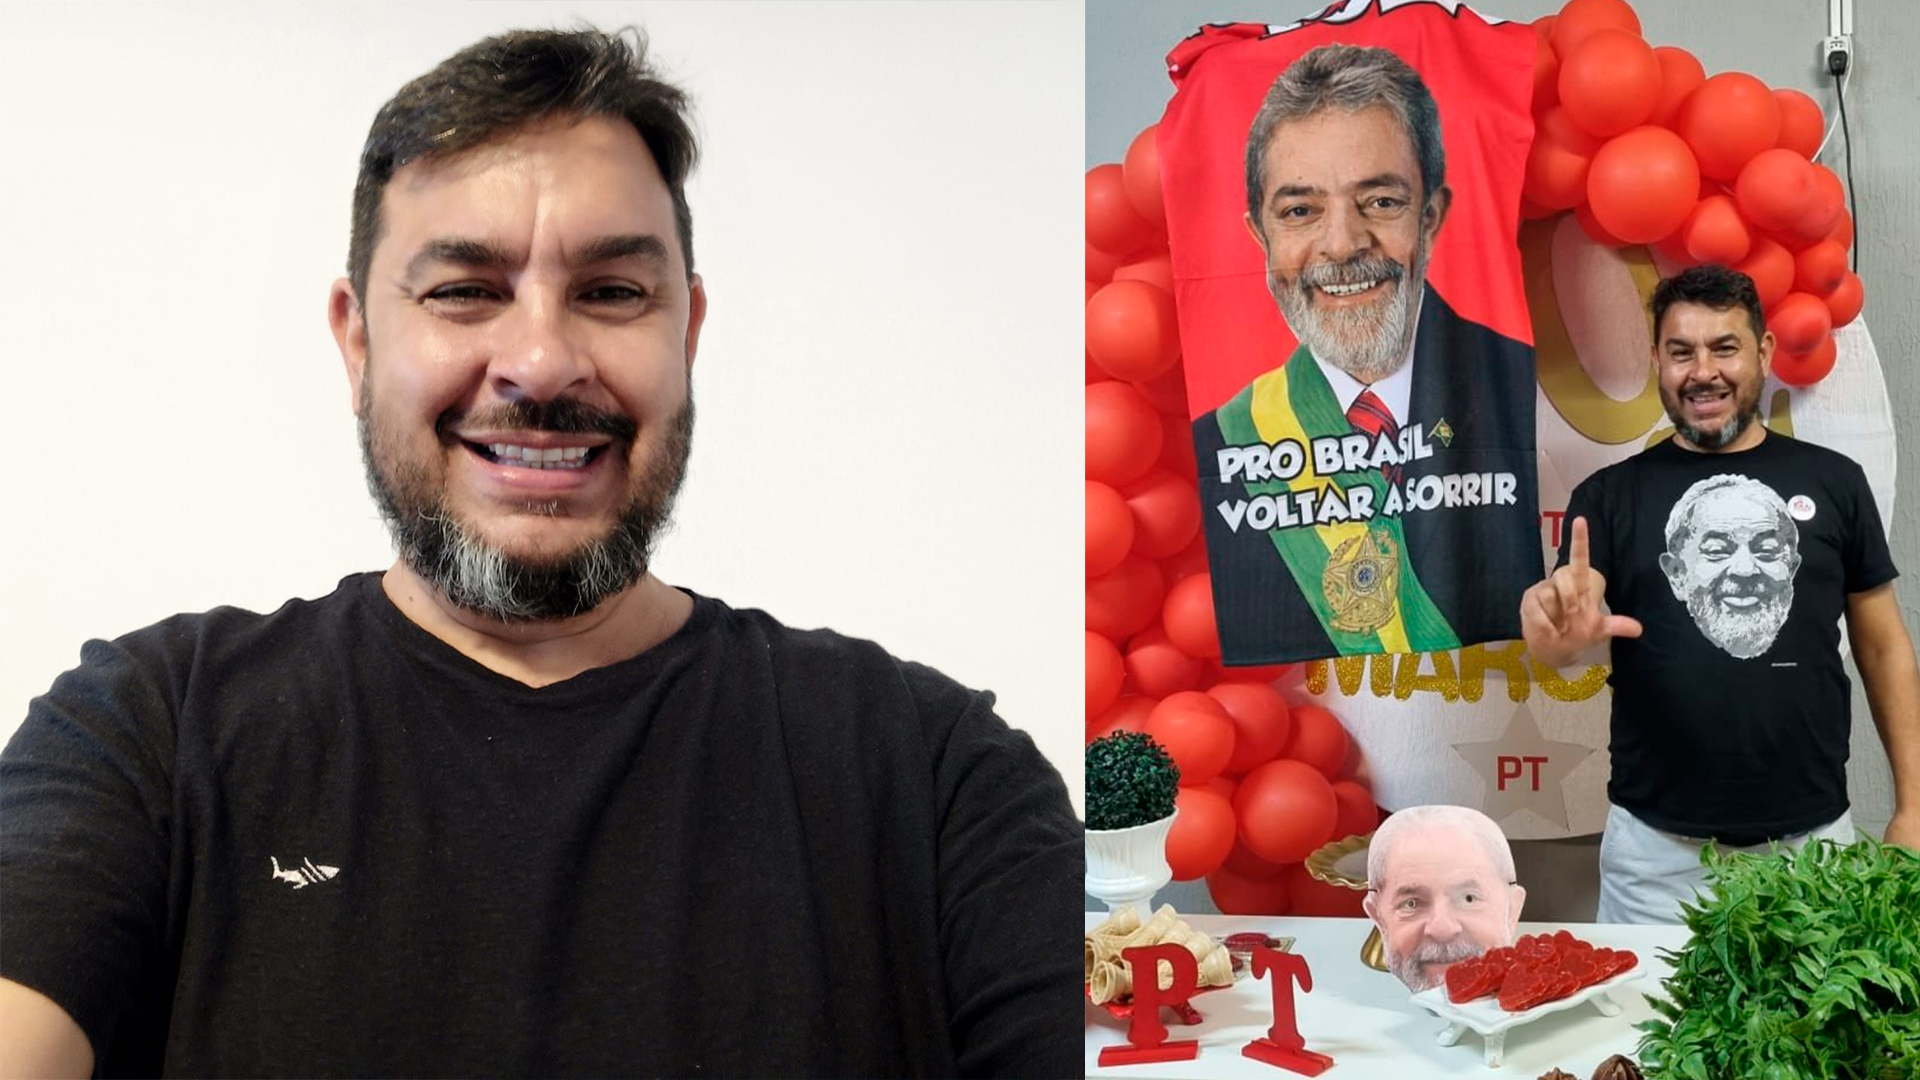 Marcelo Arruda comemorava aniversário de 50 anos, com o tema PT, quando teve festa invadida por atirador bolsonarista Jorge José Guaranho